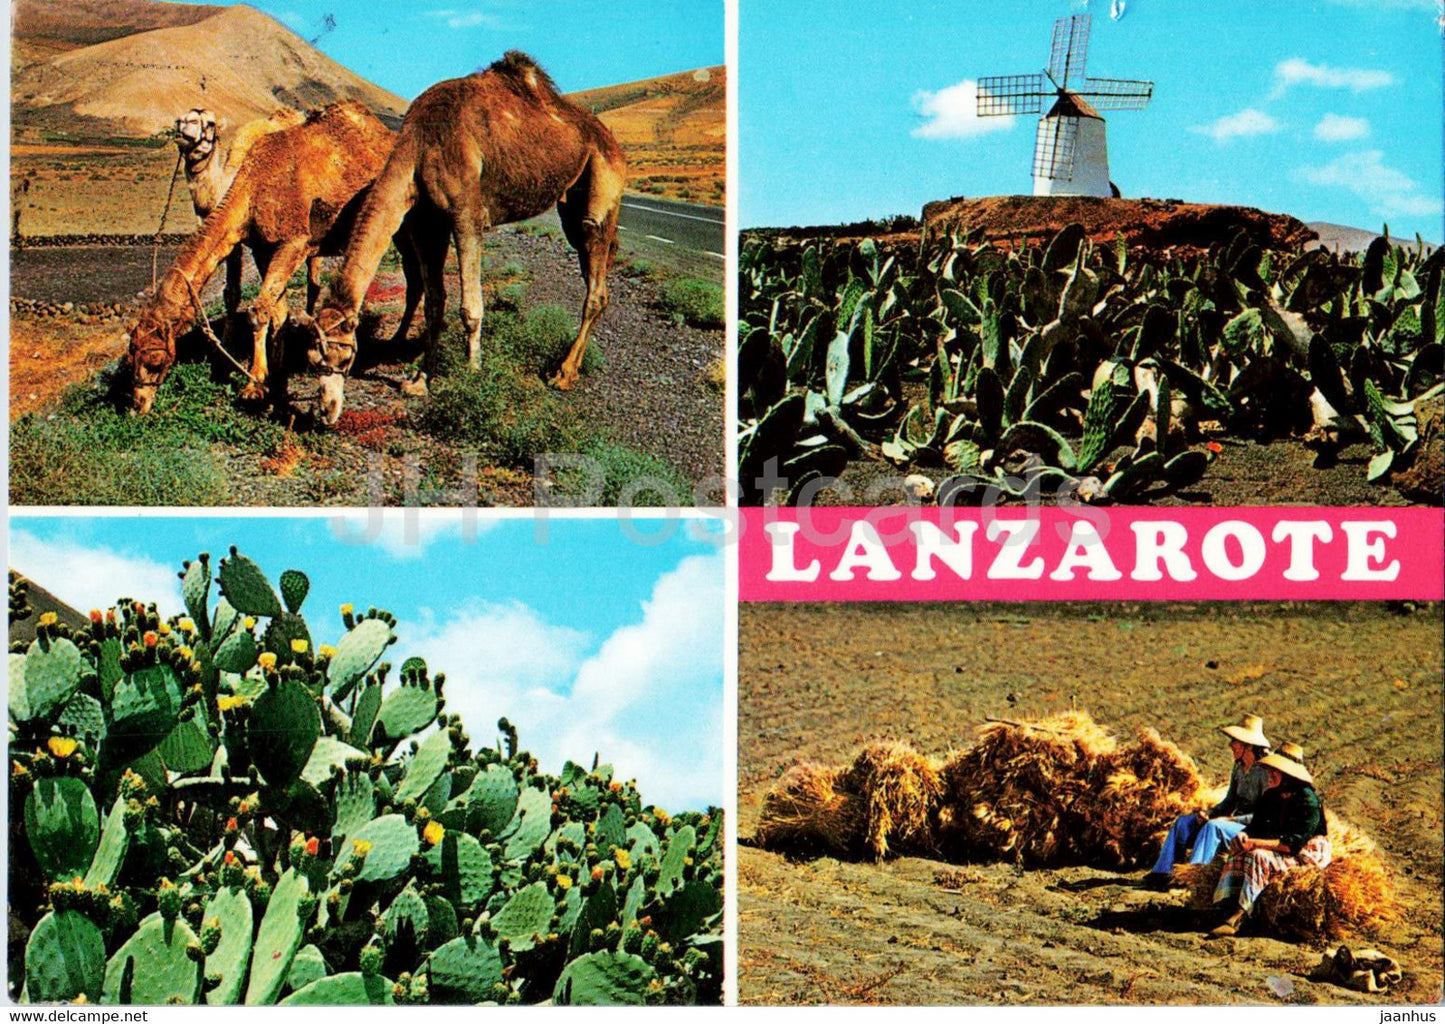 Lanzarote - Islas Canarias - Escenas tipicas - typical scenes - camel - windmill - cactus - animals - Spain - used - JH Postcards